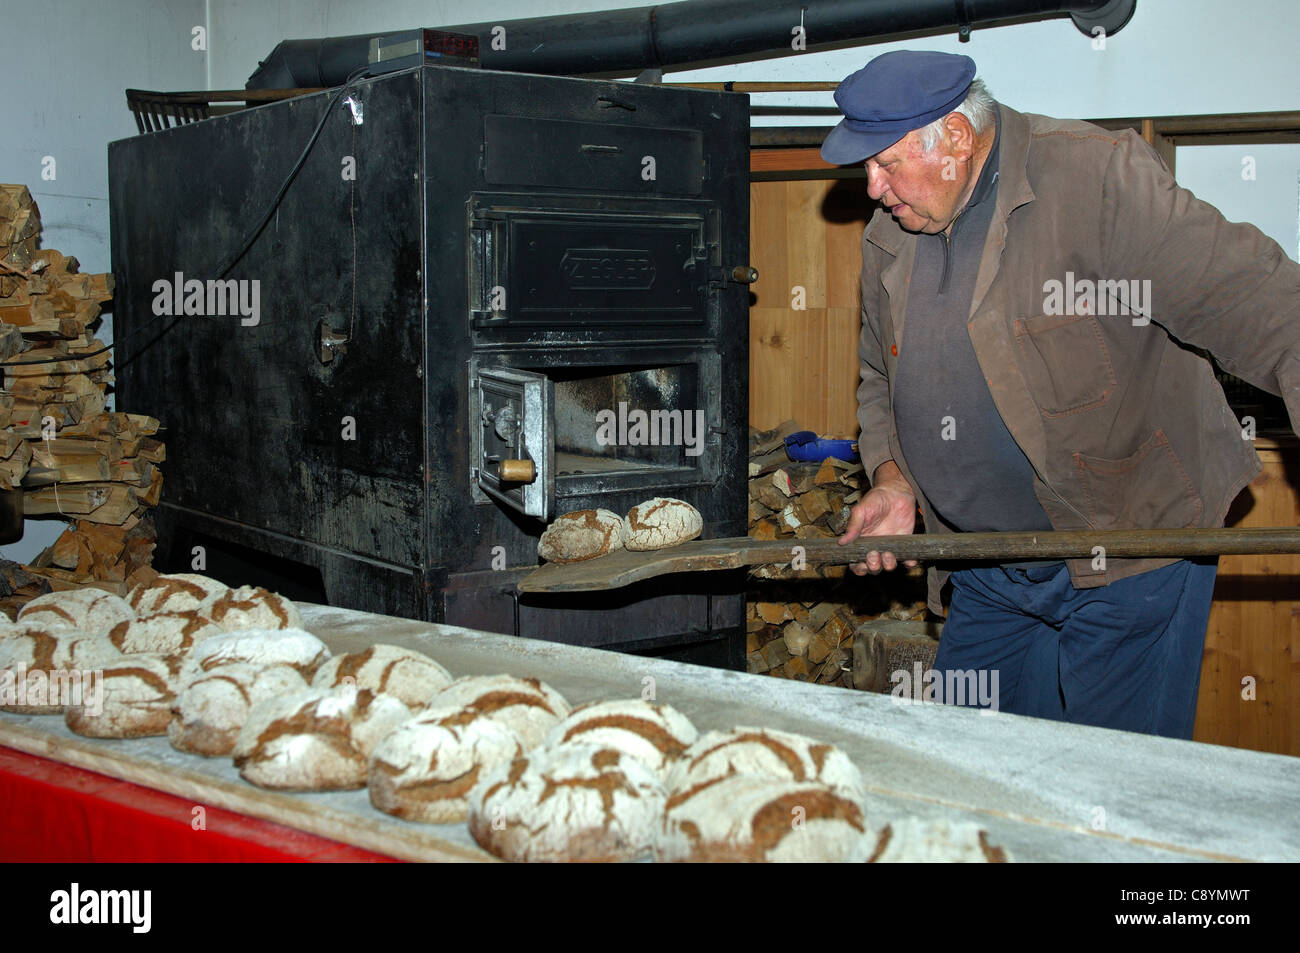 Baker, die Aufnahme von frisch gebackenen Walliser Roggen Brot aus dem Backofen der Dorfbäckerei in Erschmatt, Wallis, Schweiz Stockfoto